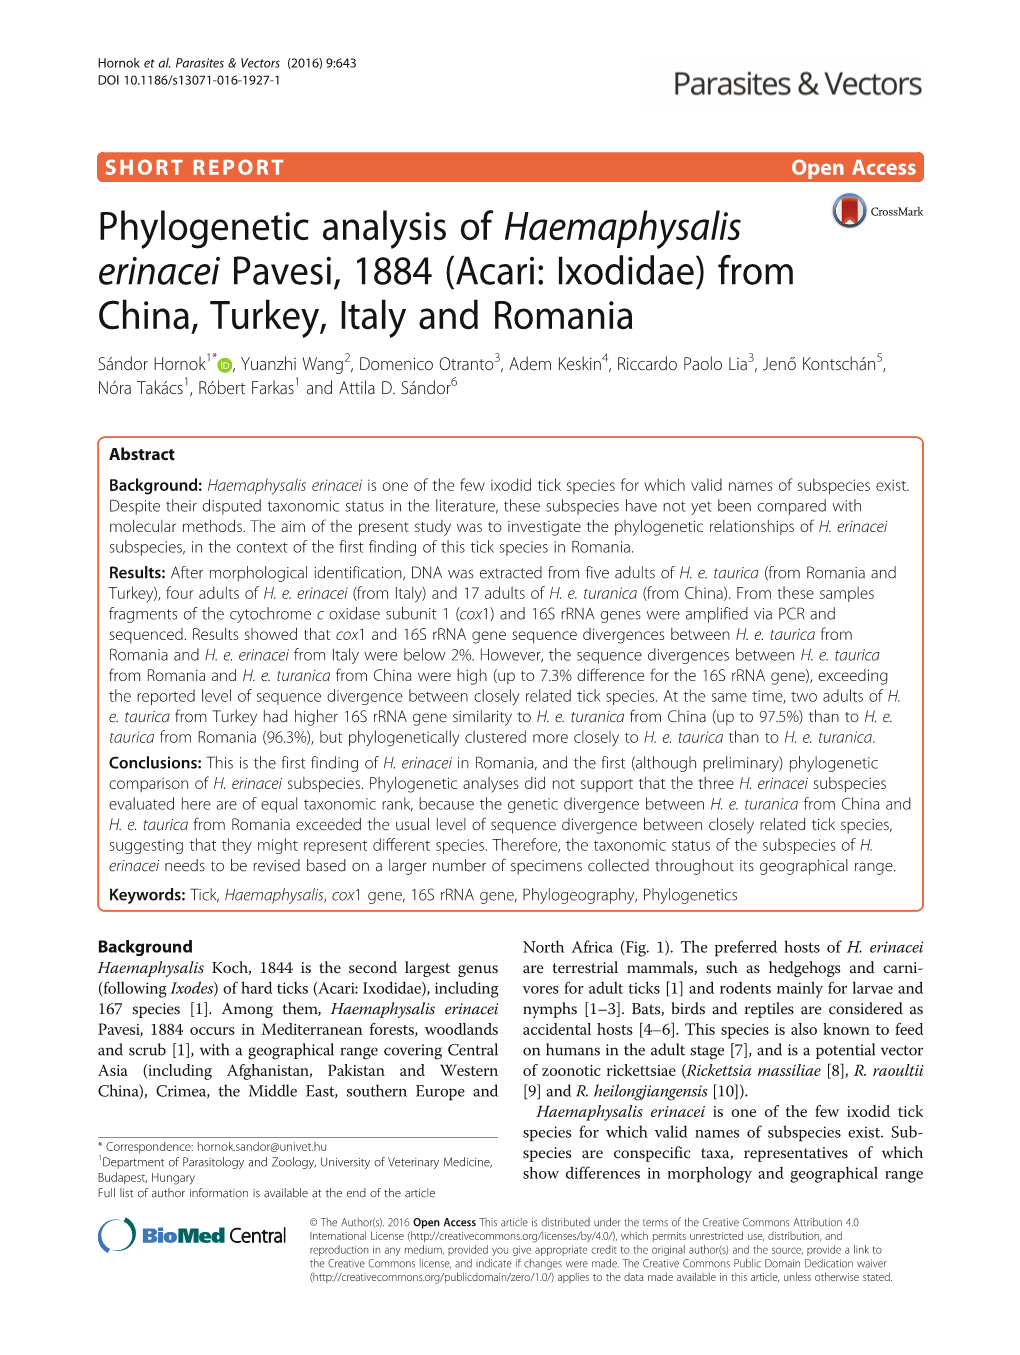 Phylogenetic Analysis of Haemaphysalis Erinacei Pavesi, 1884